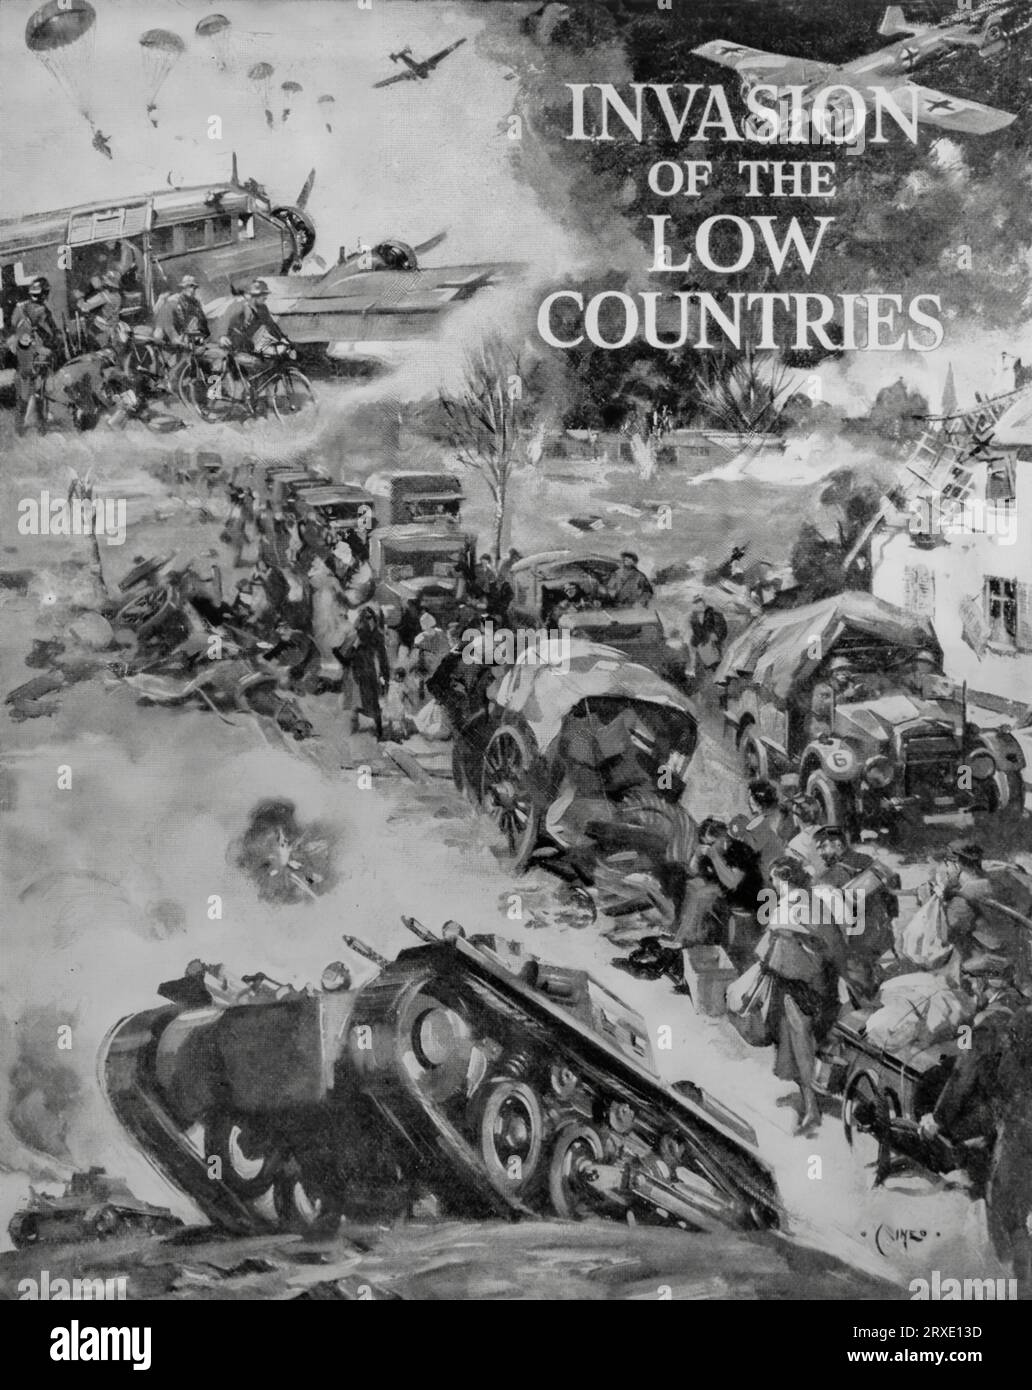 Eine Collage aus dem Mai 1940 von Terence Tenison Cuneo, einem englischen Maler, der die Invasion der unteren (Benelux-)Länder durch Deutschland zu Beginn des Zweiten Weltkriegs illustriert. Stockfoto